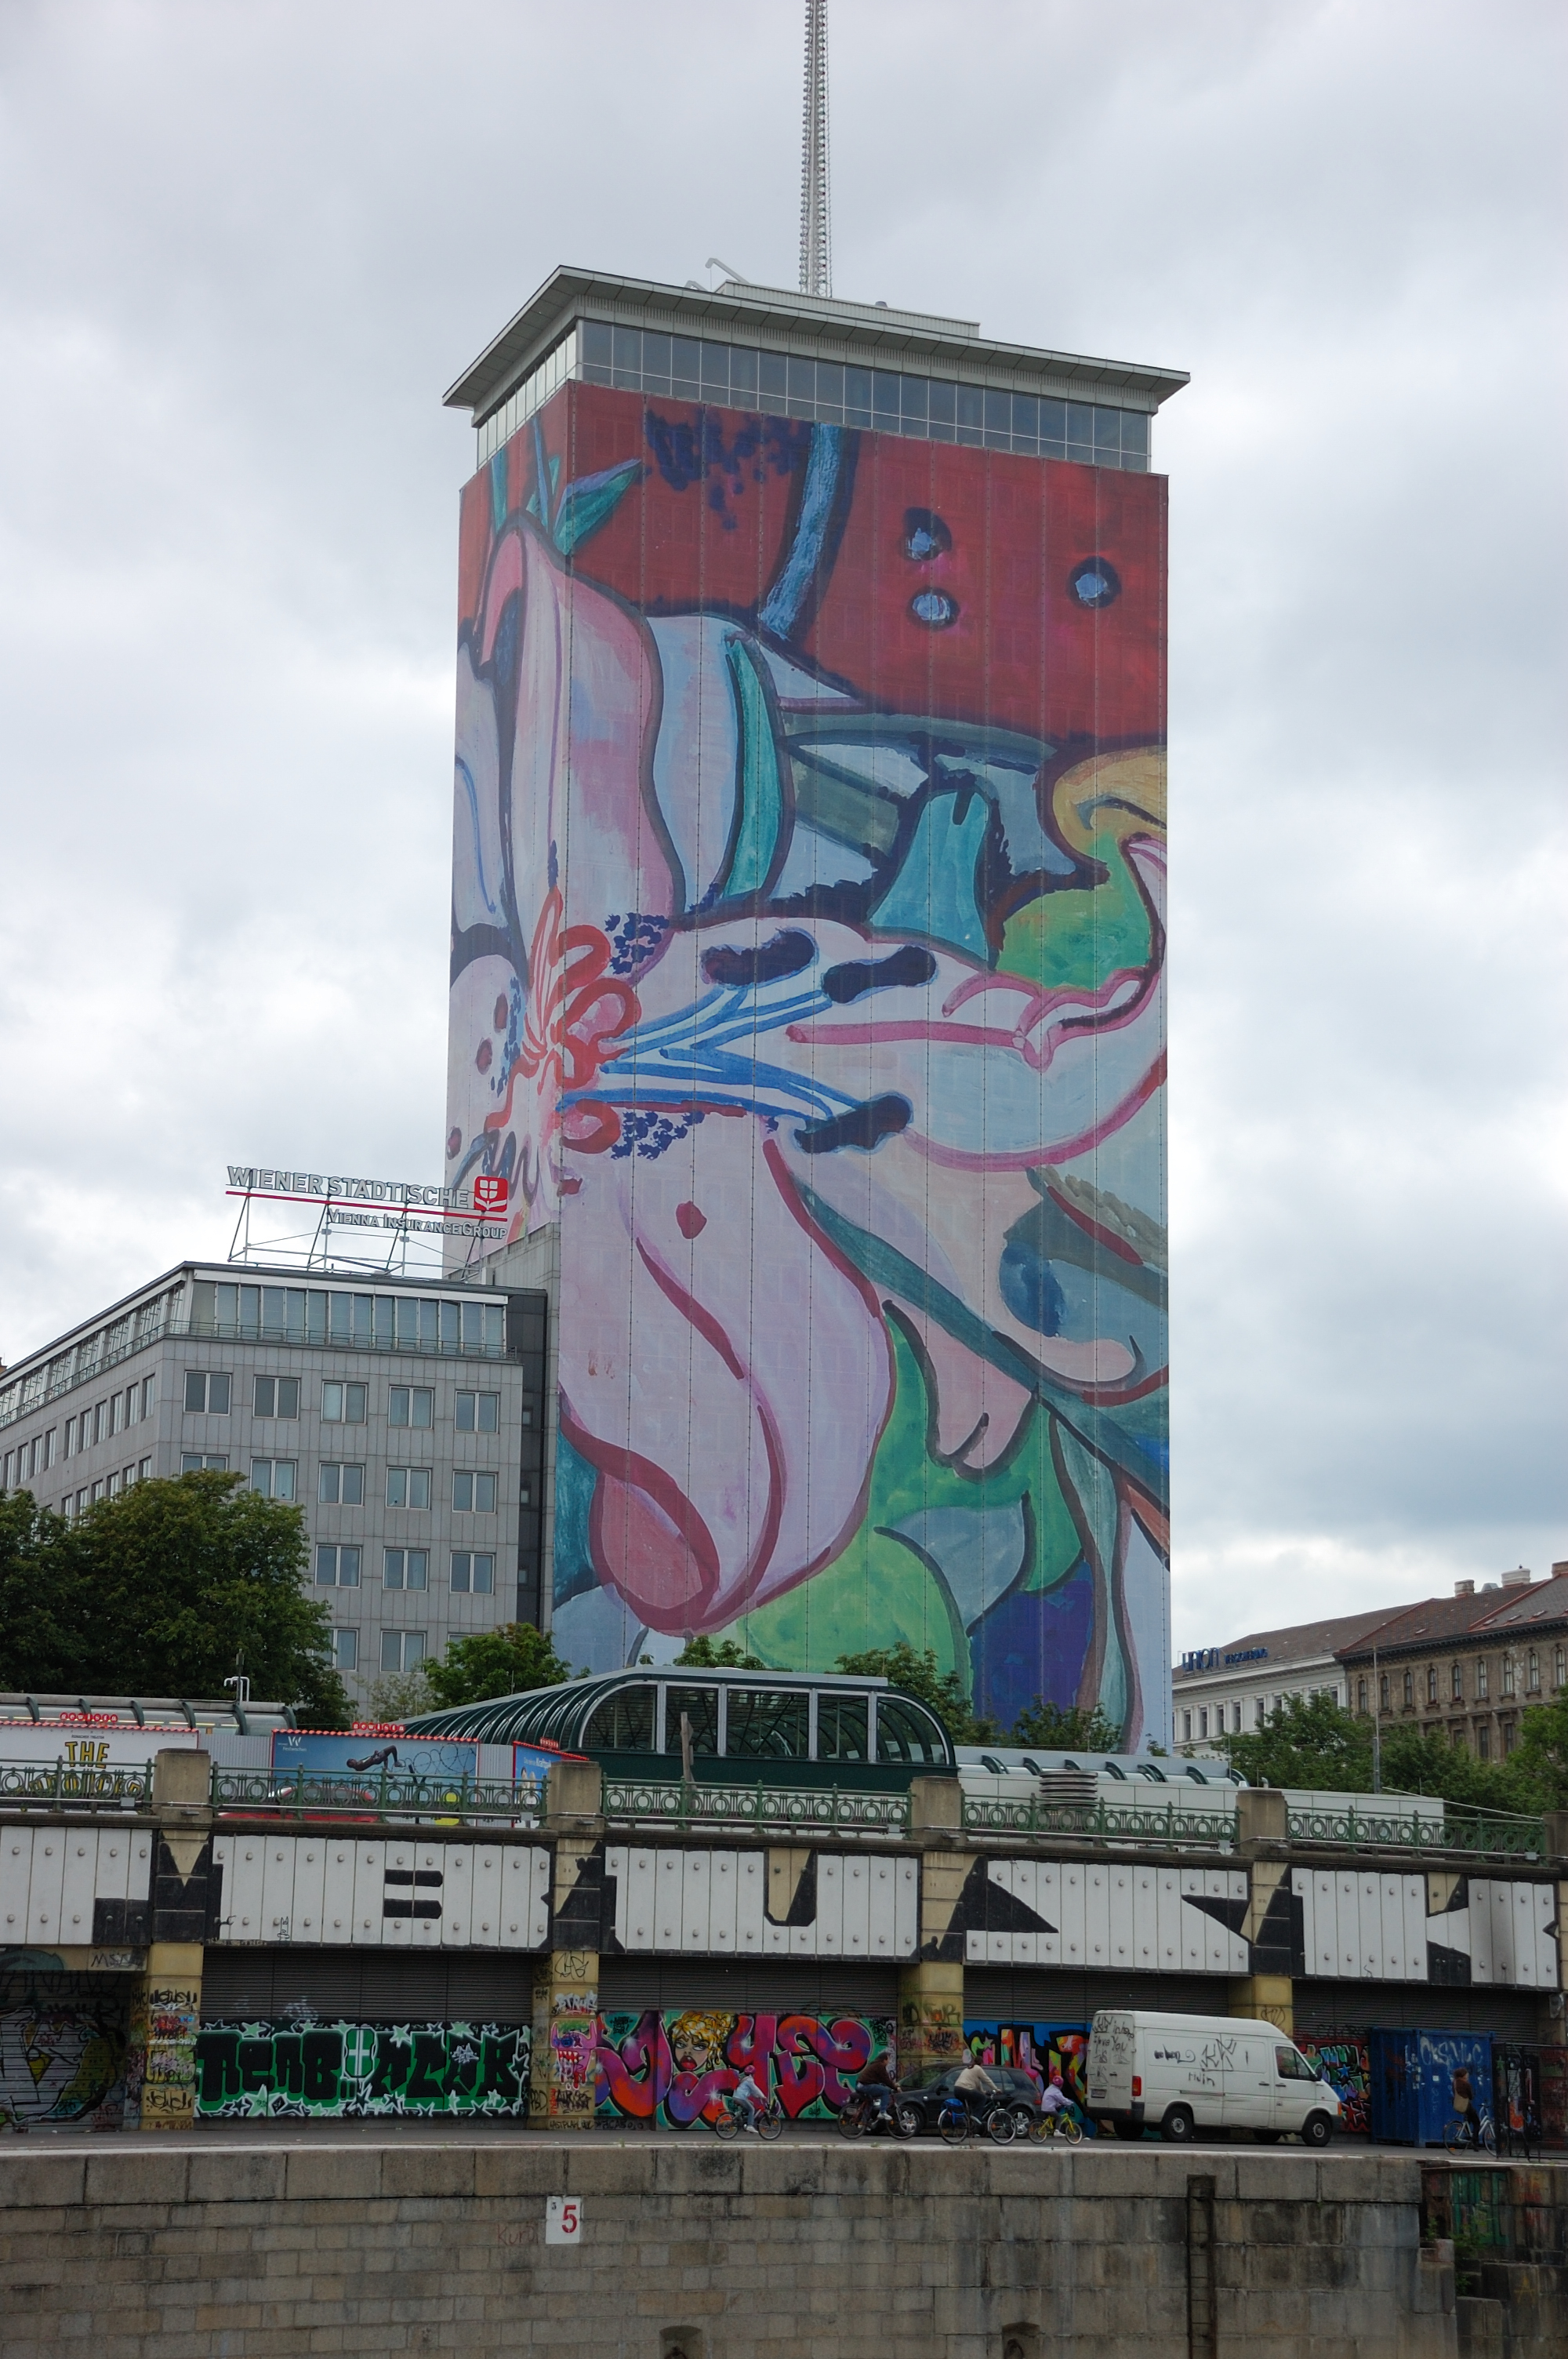 2008: Turm in Blüte von Hubert Schmalix (Blumenstillleben) siehe https://wiev1.orf.at/stories/275264